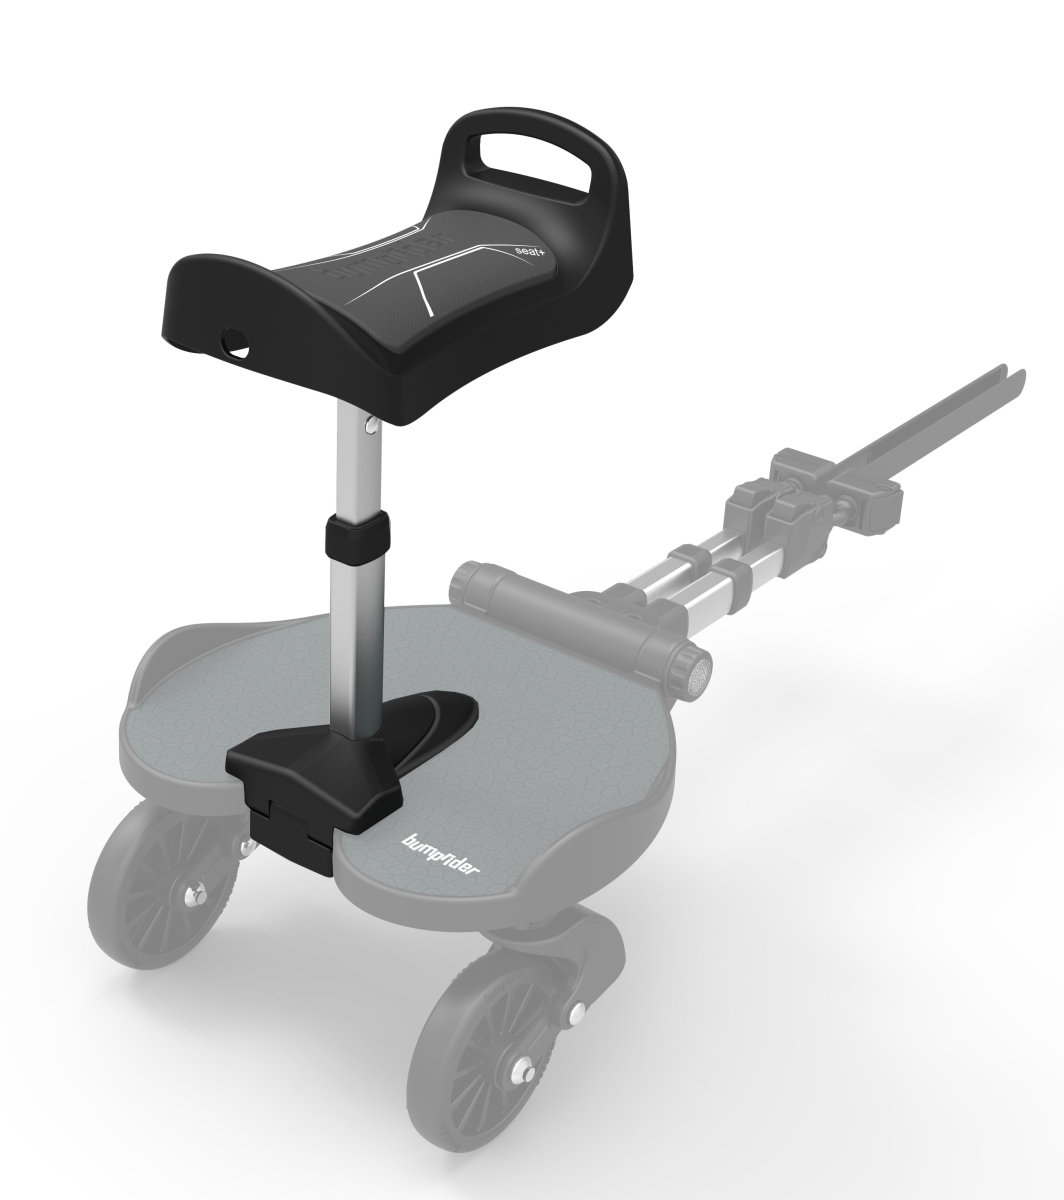 Bumprider Dostawka do wózka z siedziskiem dla starszego dziecka Seat+ - czarna